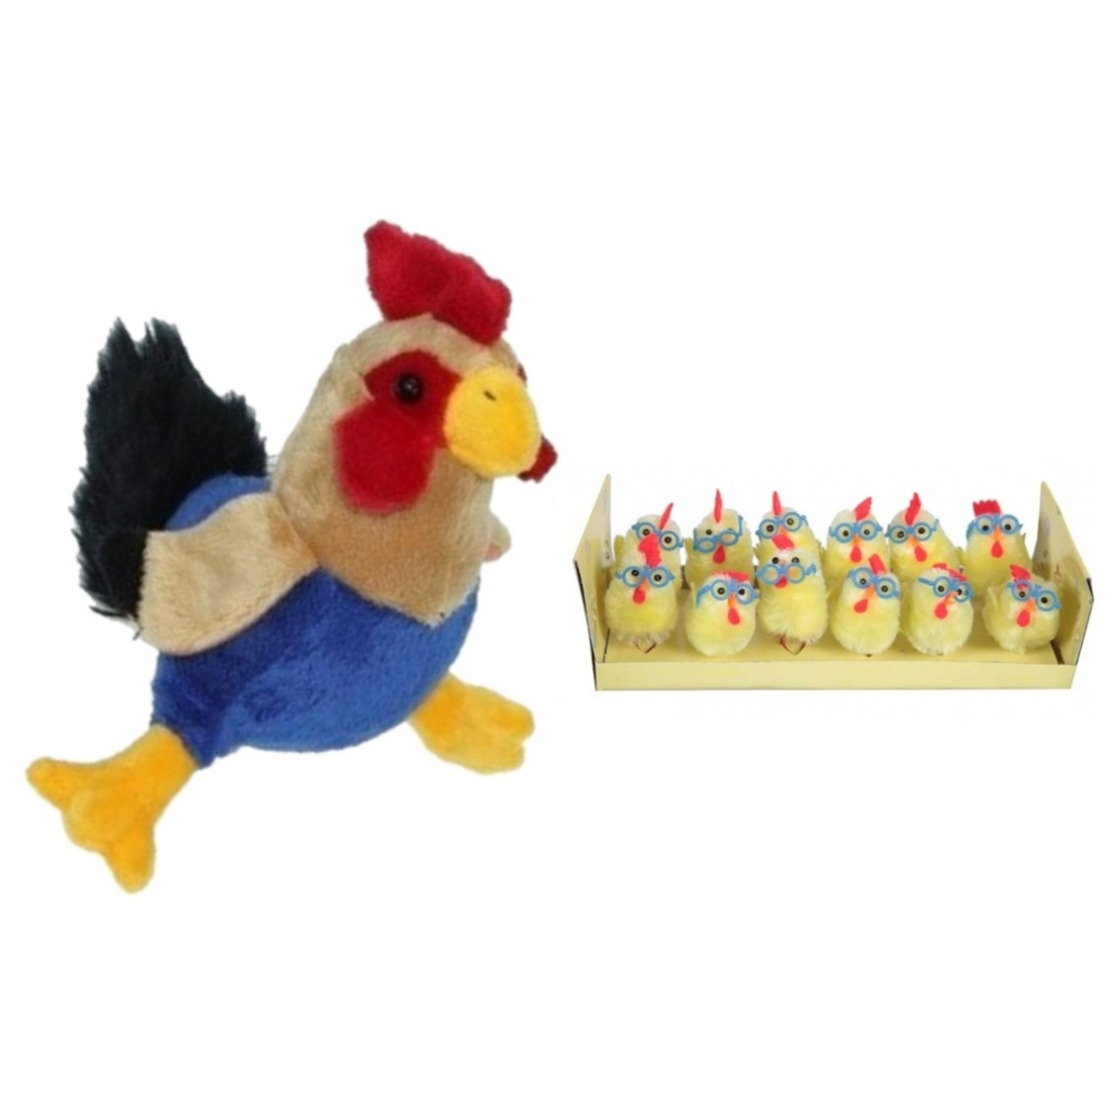 Pluche kippen-hanen knuffel van 20 cm met 12x stuks mini kuikentjes met brilletje 4,5 cm